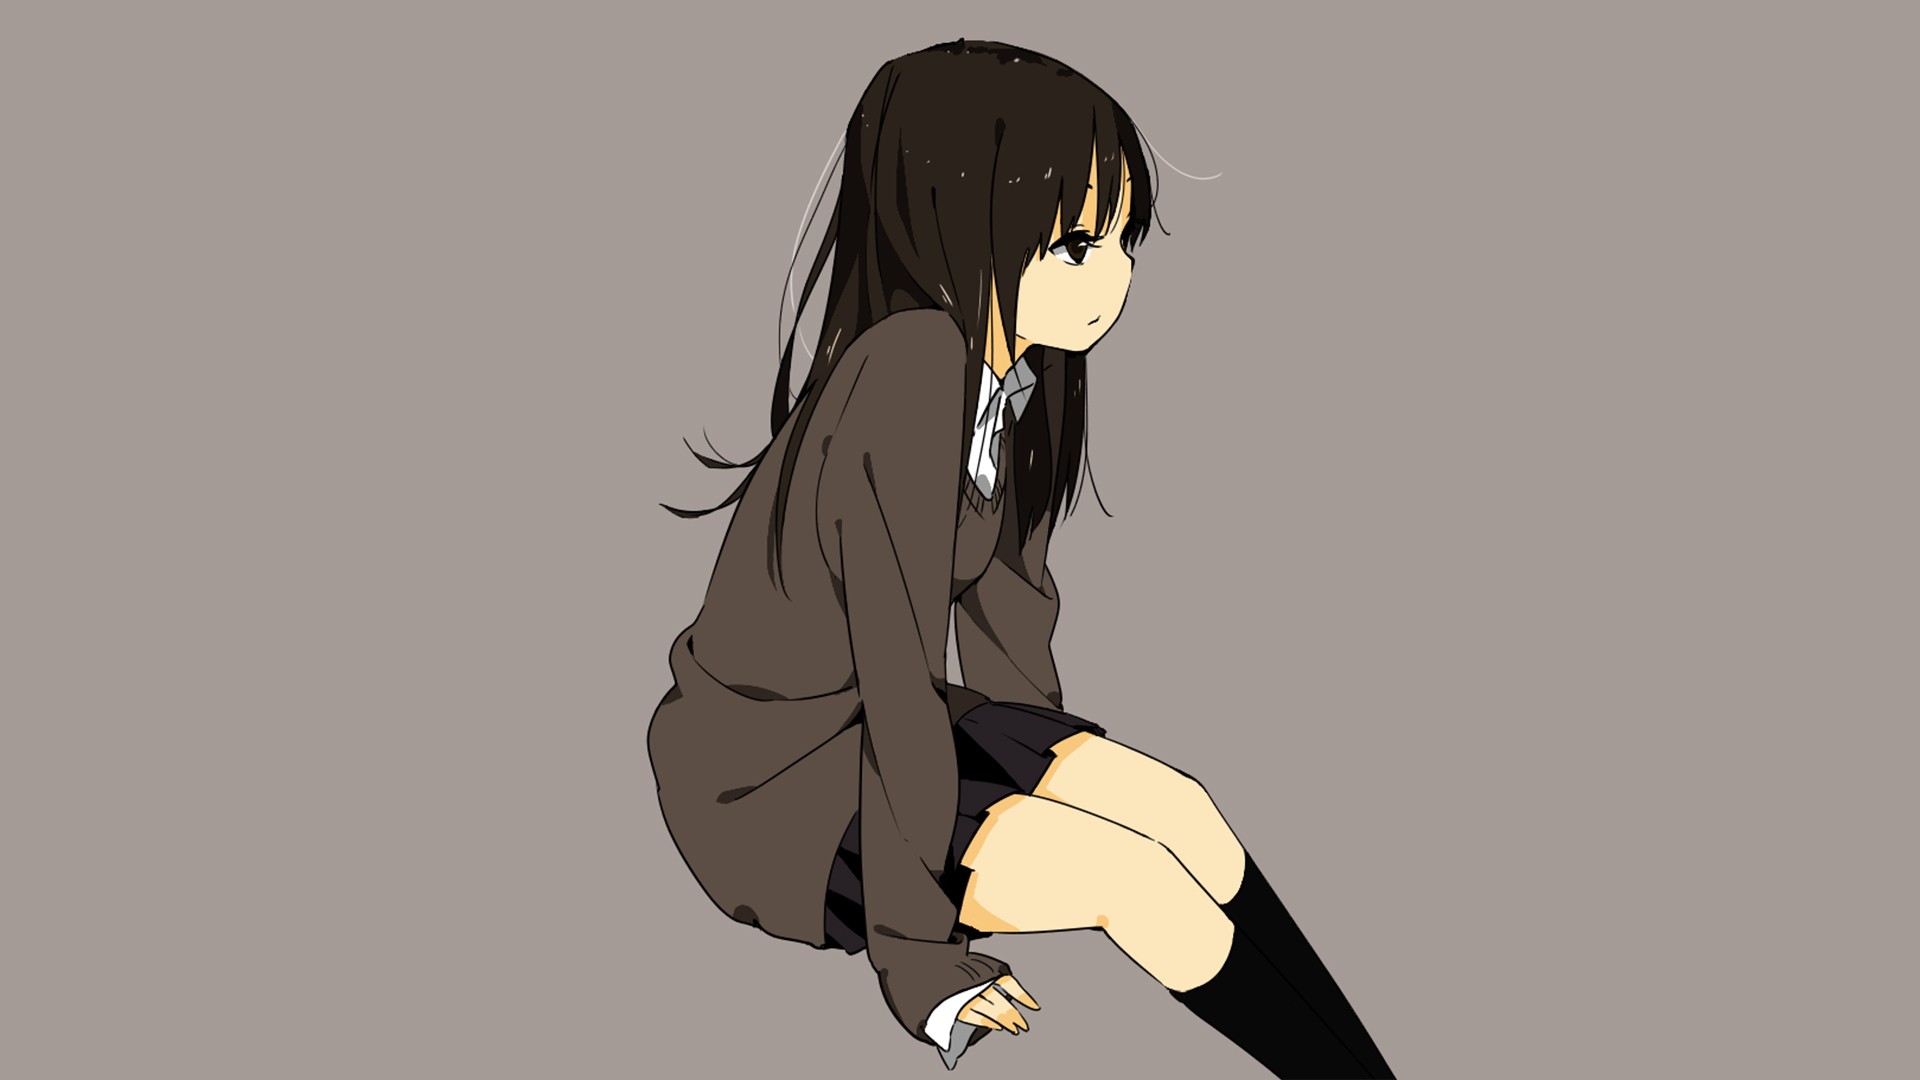 Sad Anime Girl Wallpaper Anime Girl School Uniform Black And